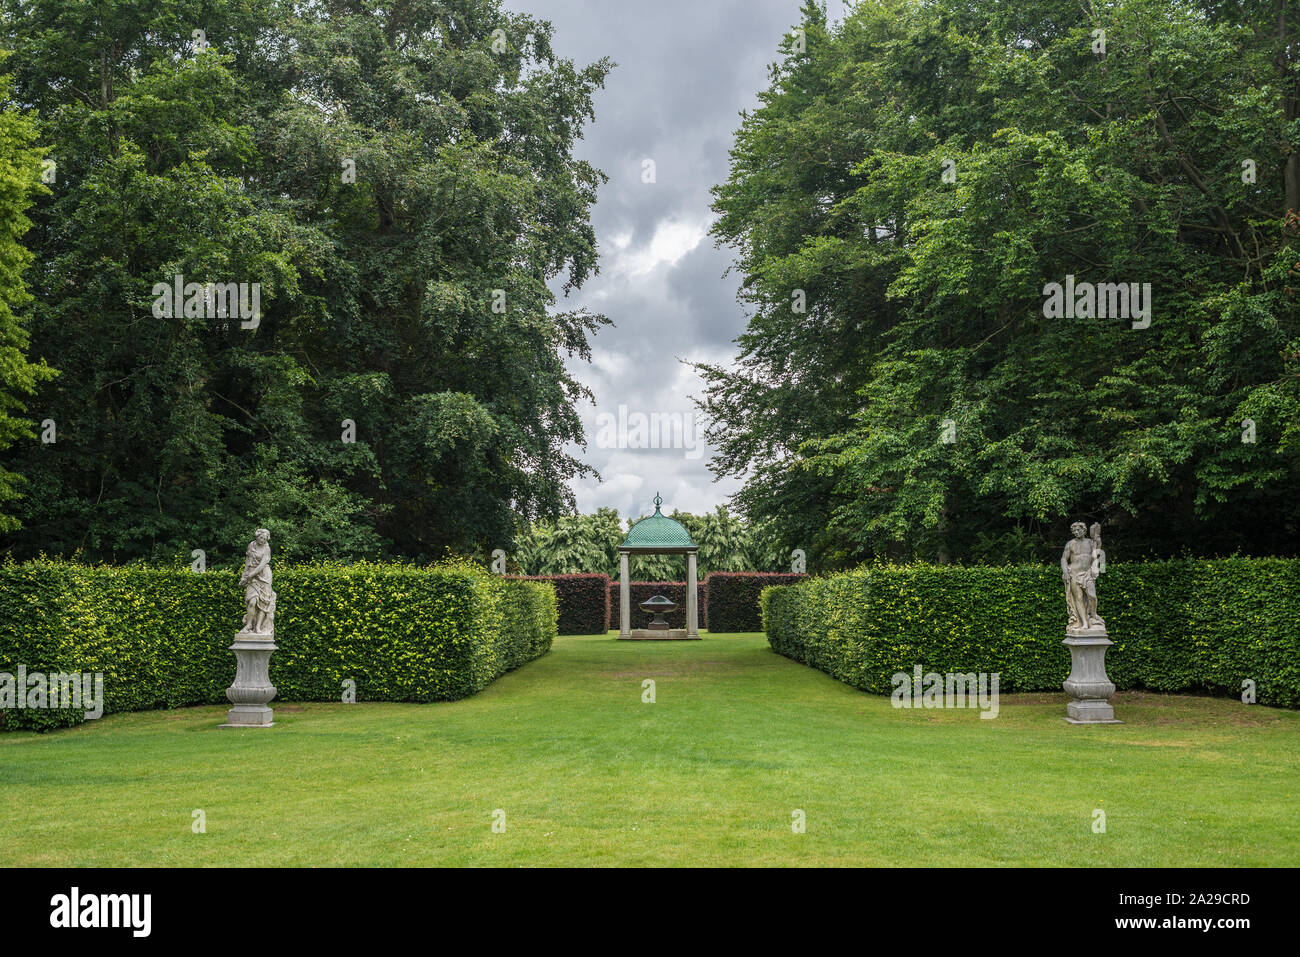 Cambridge, UK - Juillet 2019 : jardins d'Anglesey Abbey, une maison de campagne, site National Trust, anciennement un prieuré, dans le village de Lode, au nord-est de C Banque D'Images